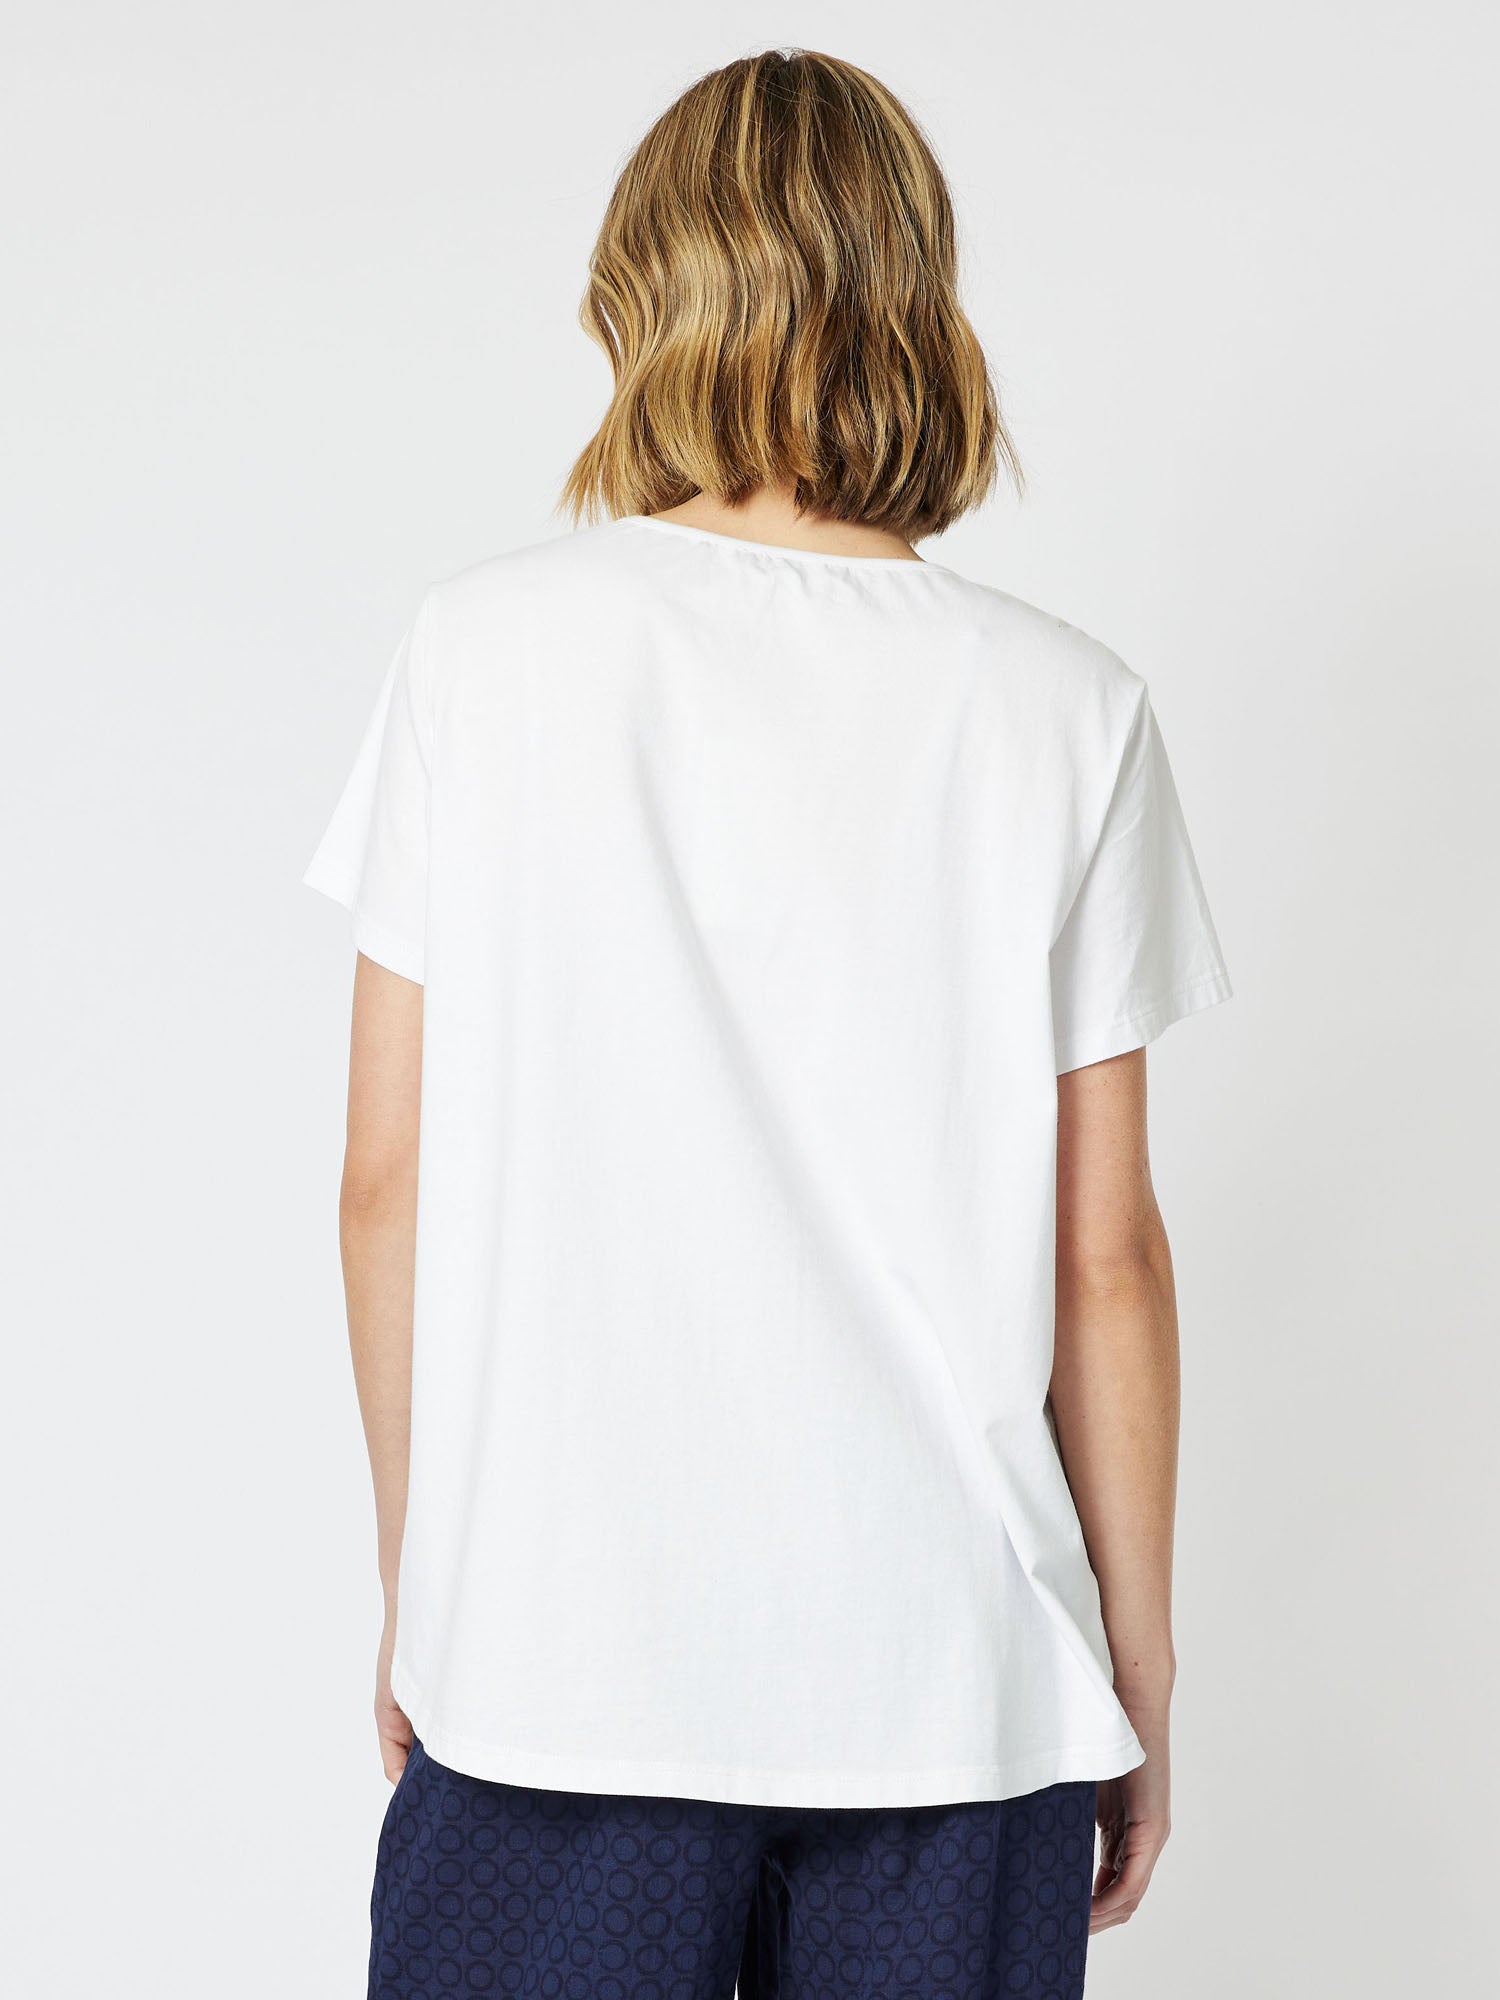 Sphere Print Front Short Sleeve T-Shirt - White